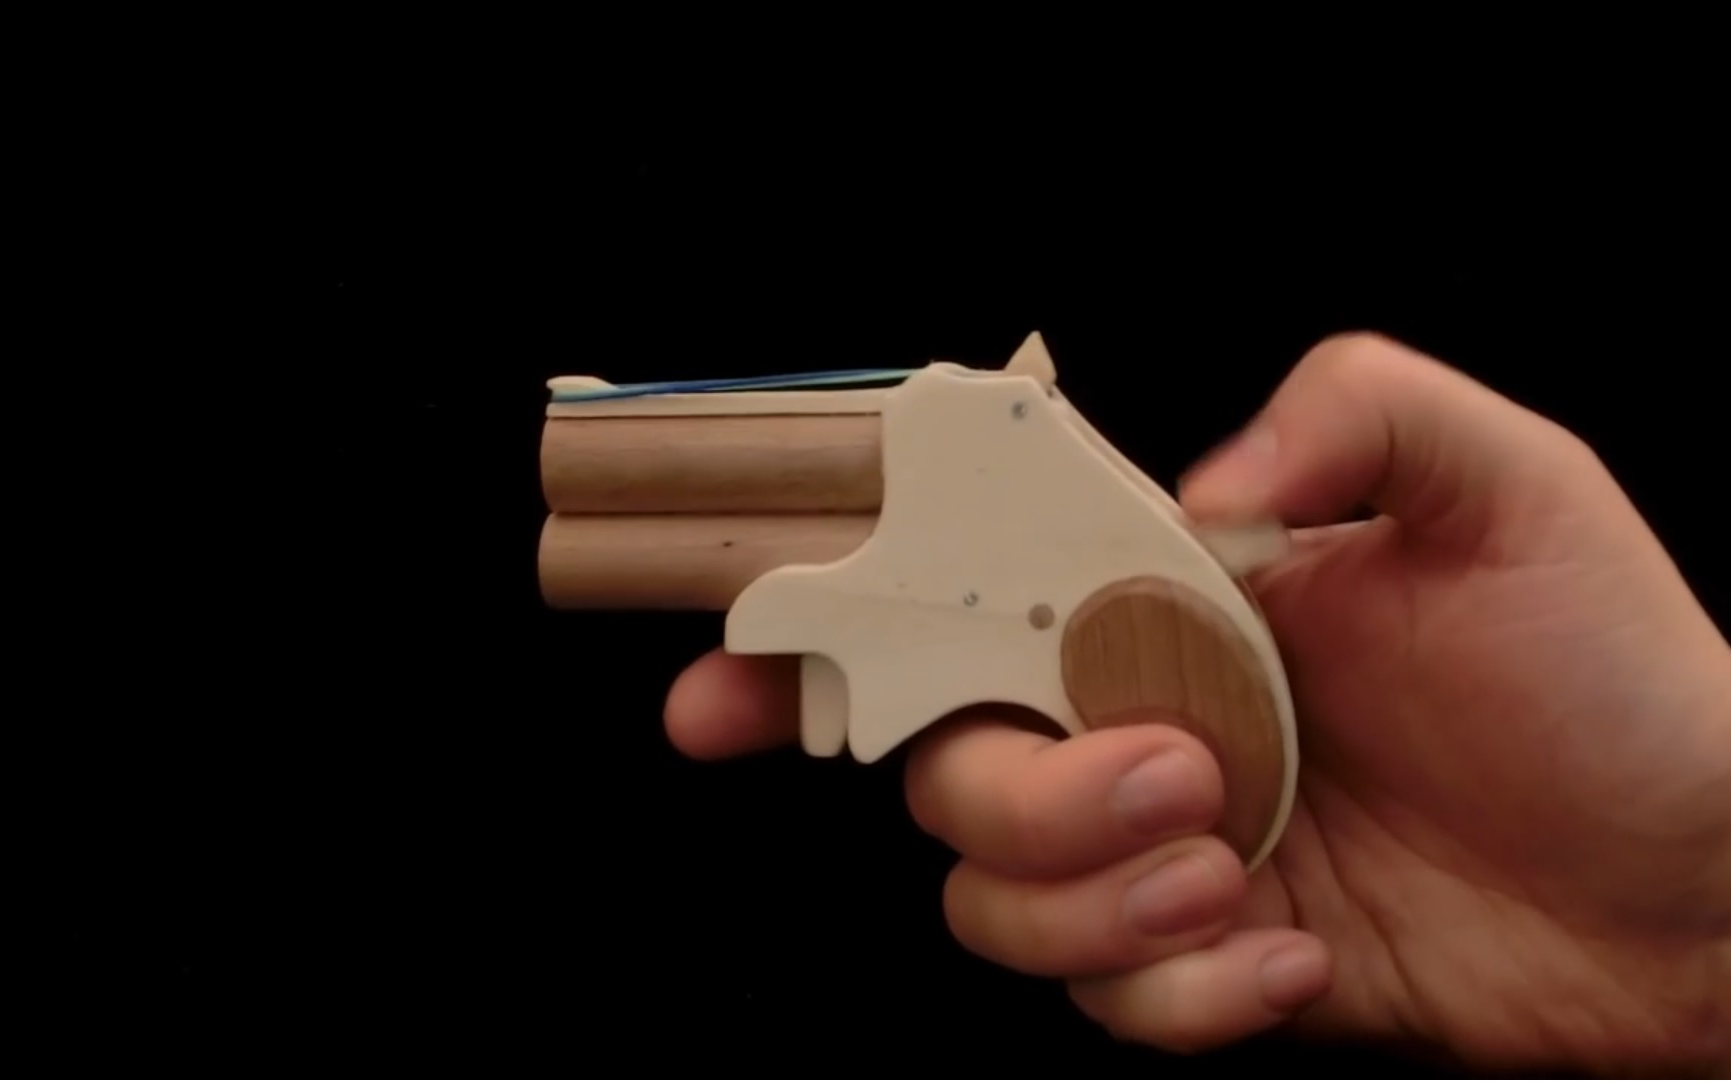 制作一把双管橡皮筋玩具枪型号wgog1005制作图纸下载橡皮筋枪制作教程